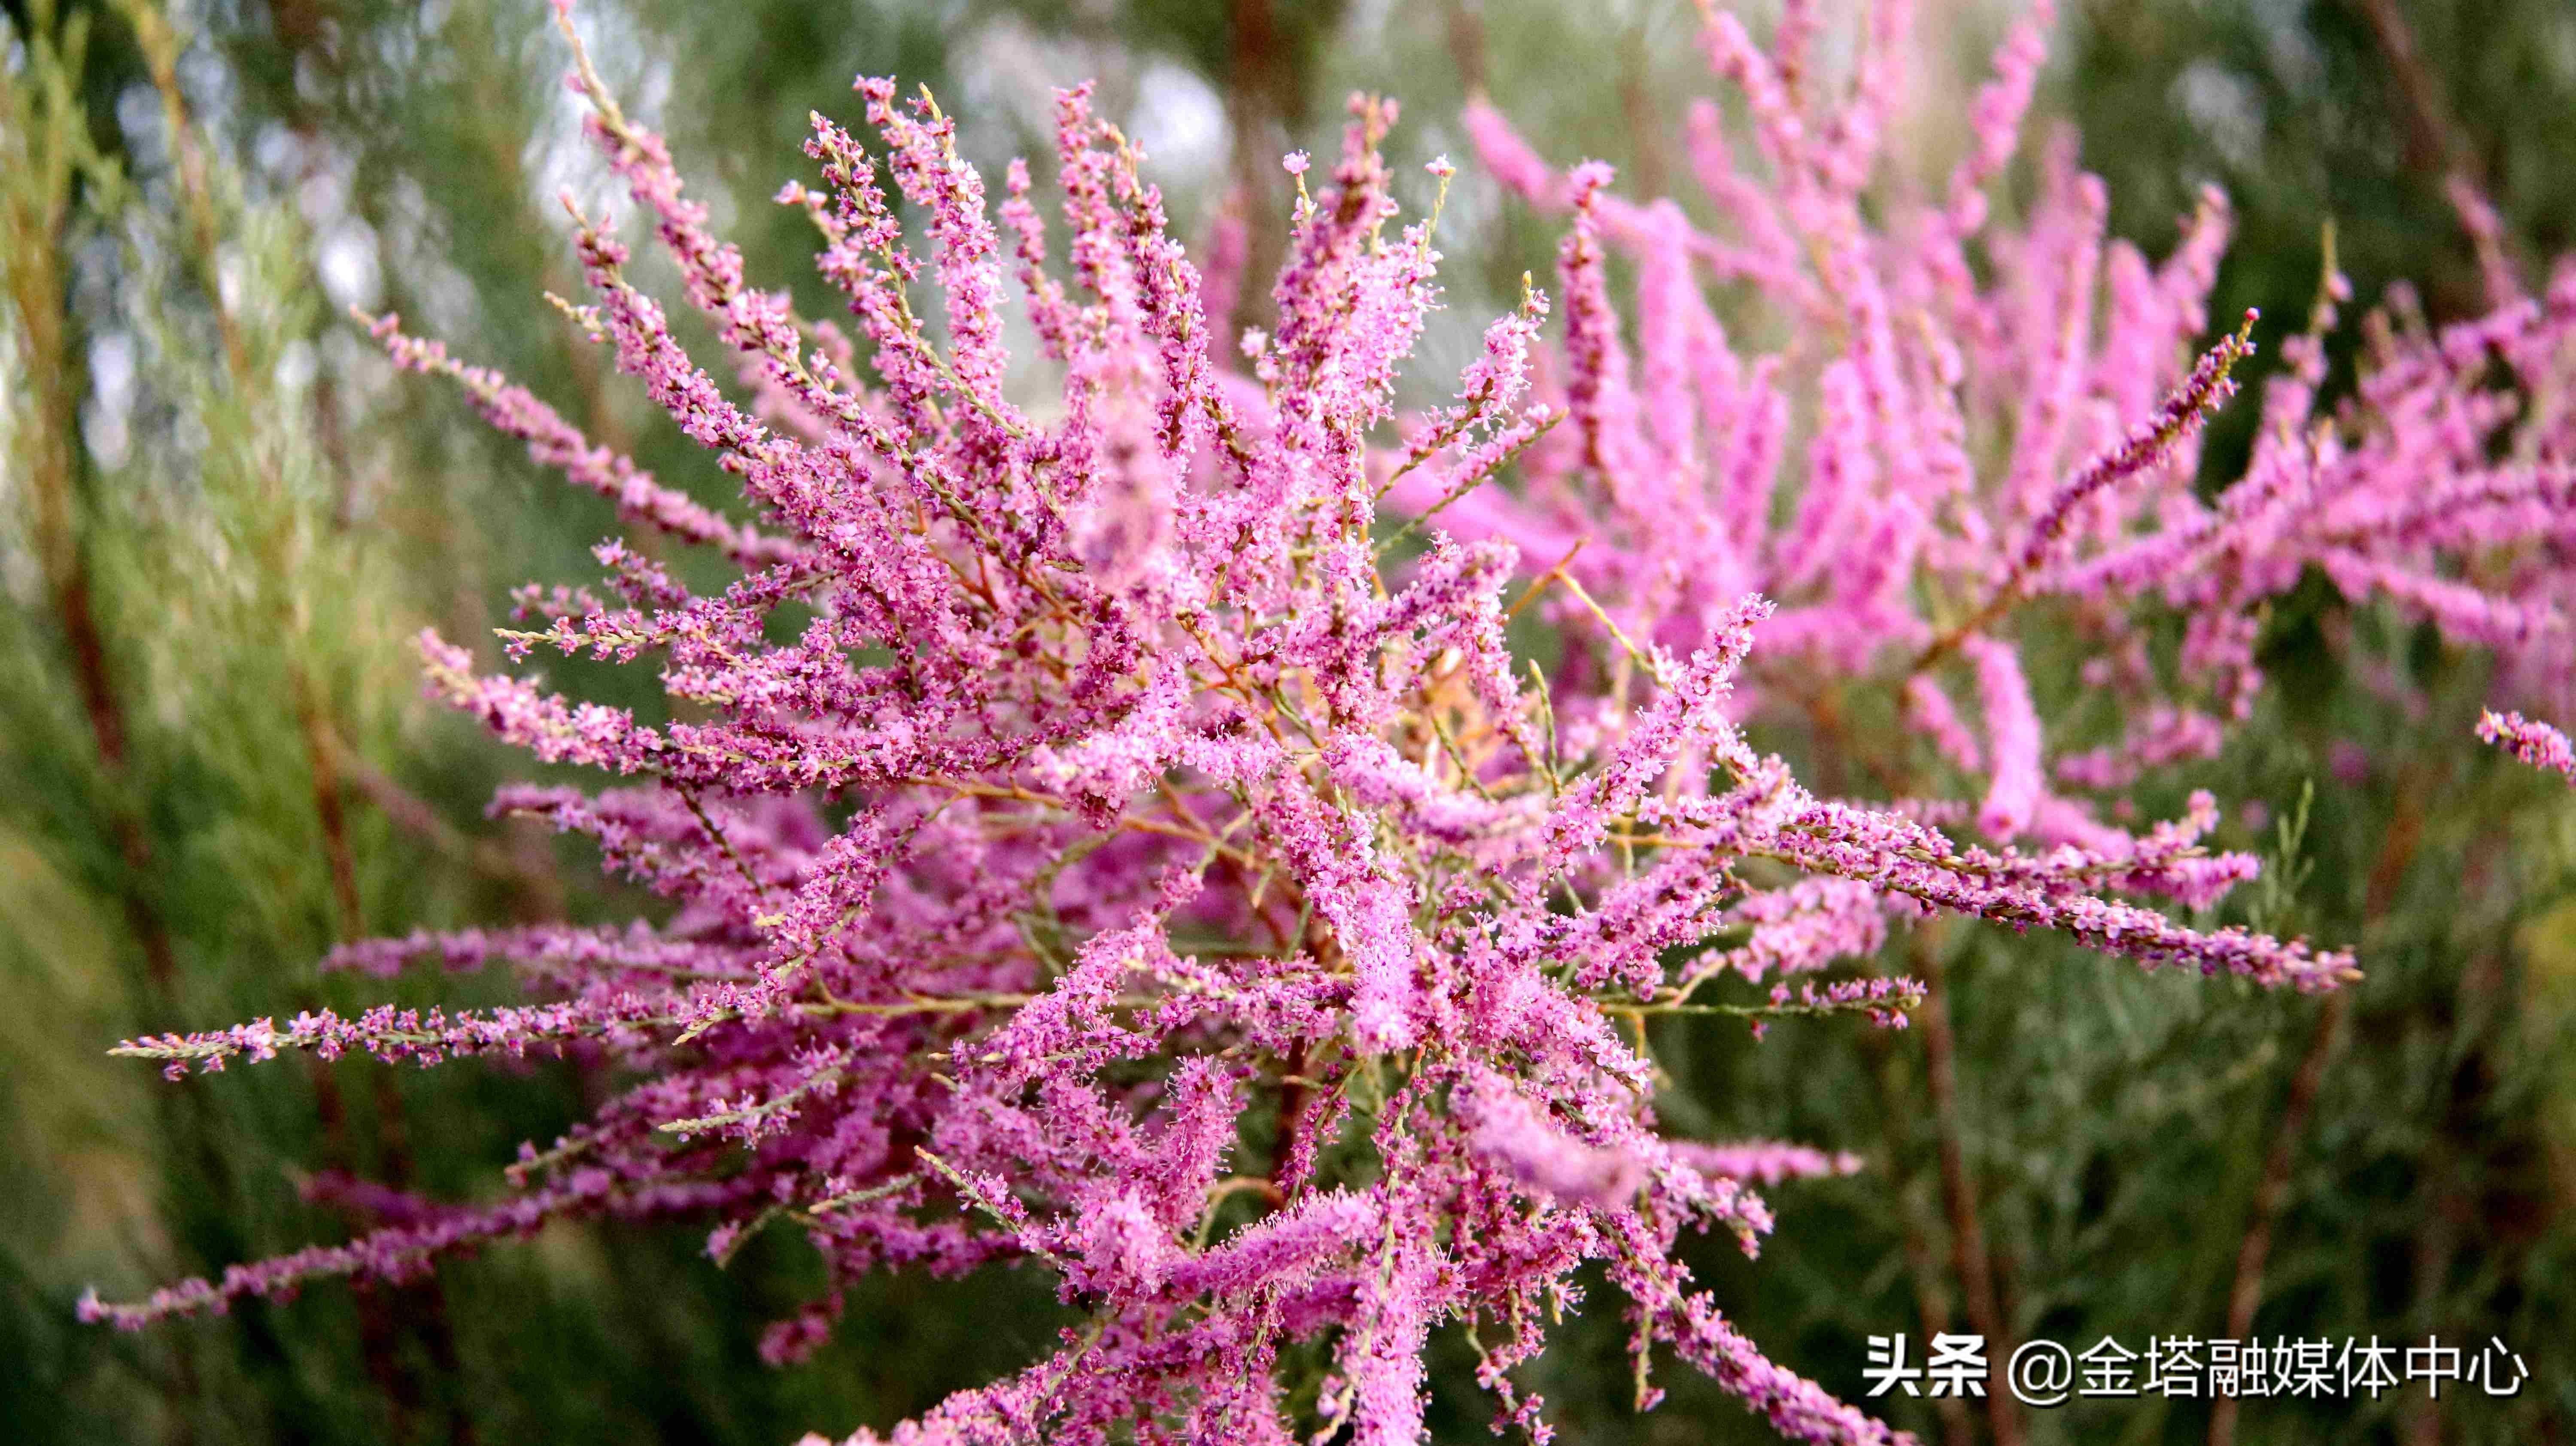 「美丽陇原」酒泉金塔:惊艳!在大漠深处,竟藏着这样的粉红仙子